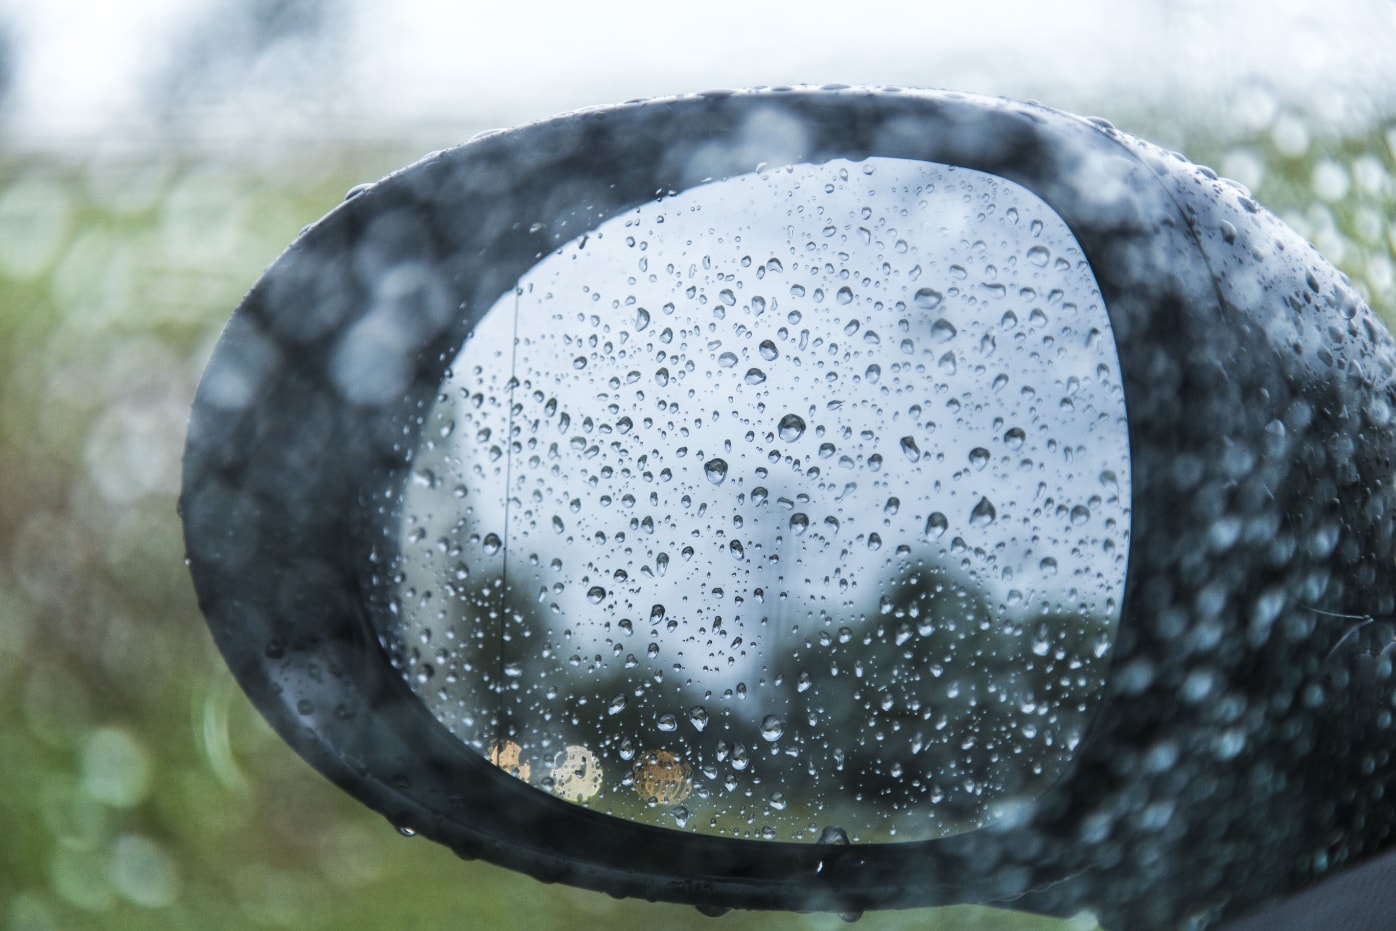 Οδήγηση στη βροχή: Τι πρέπει να προσέχετε – Επτά συμβουλές για ασφαλή οδήγηση